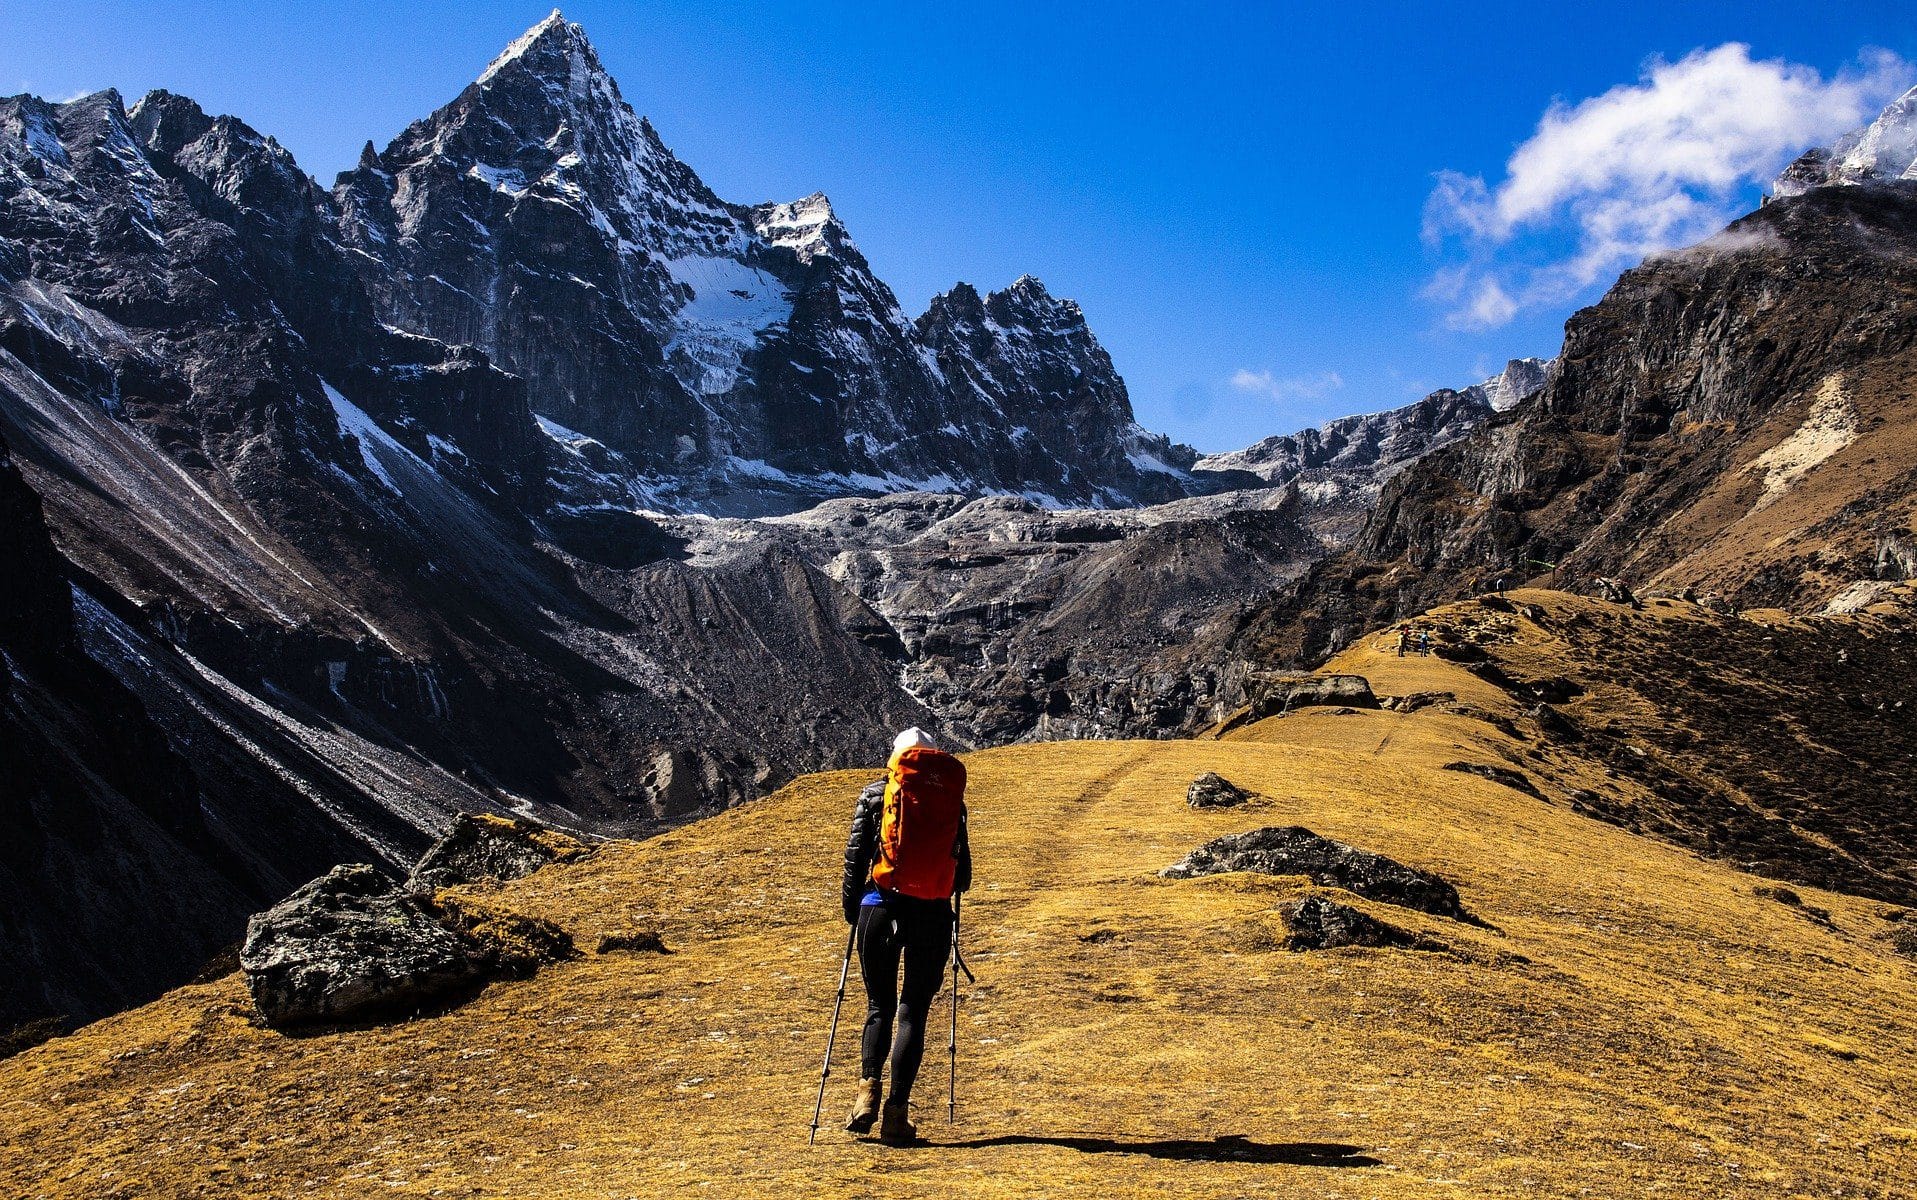 Uma pessoa escalando o Monte Everest.